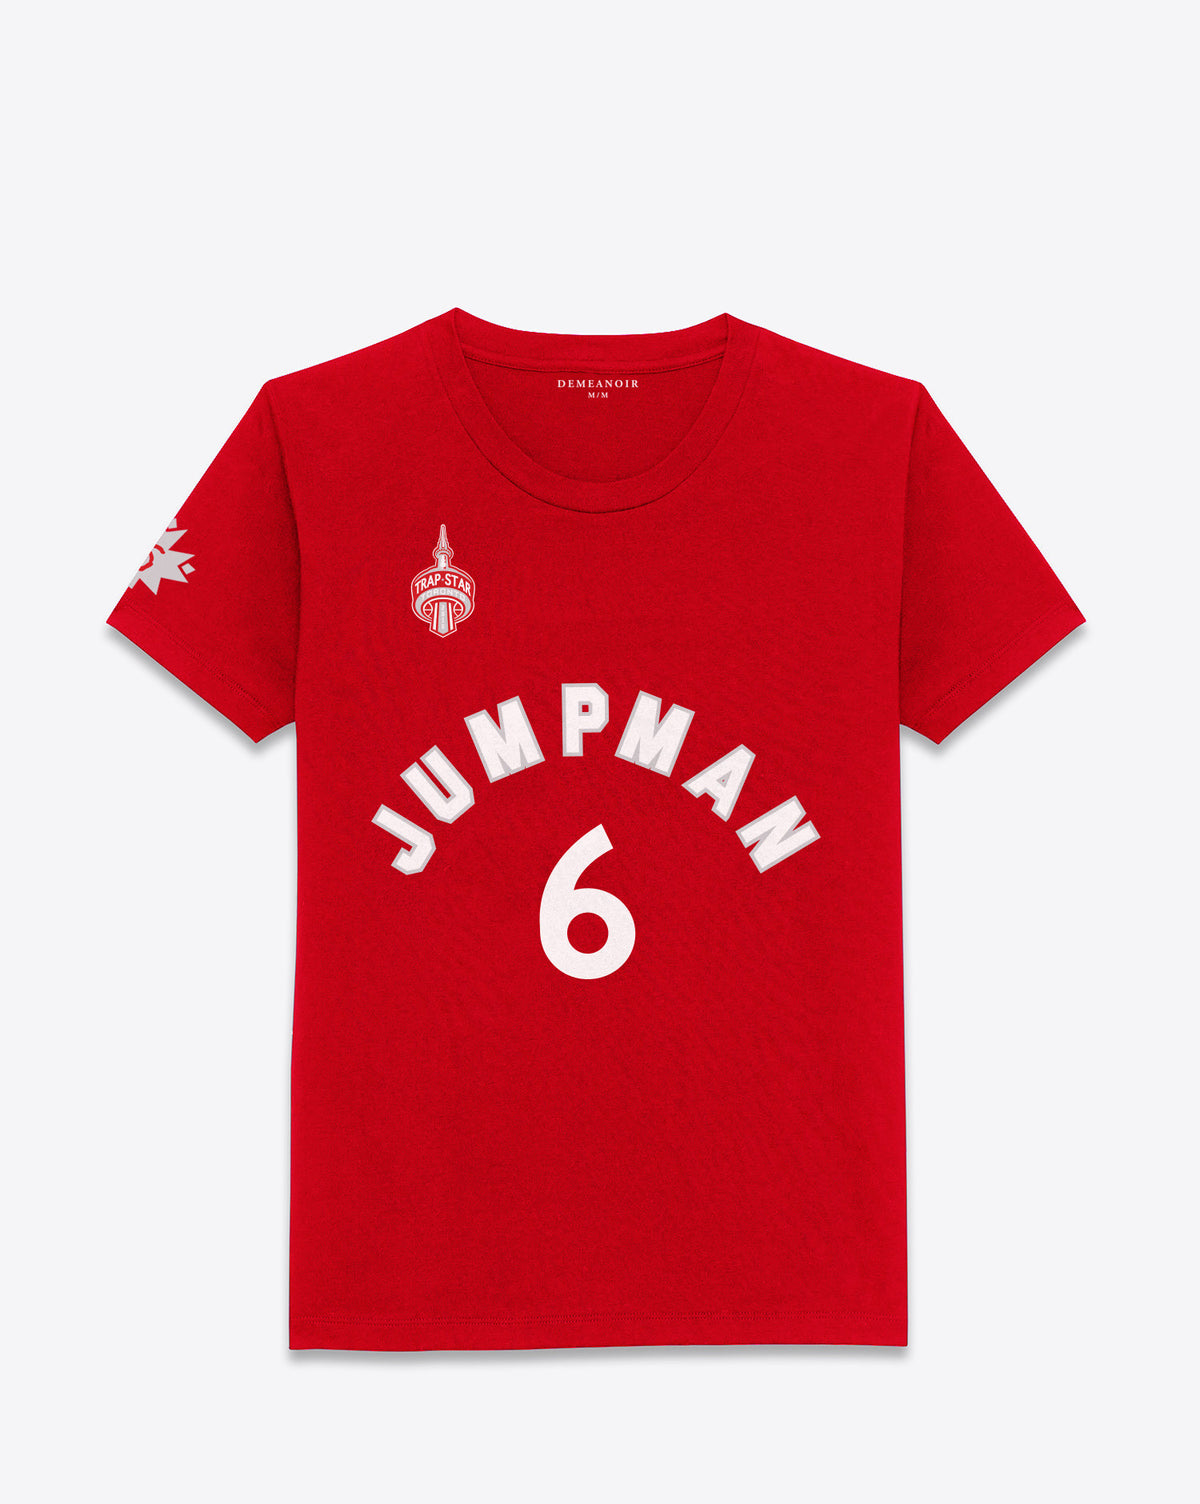 6 Jumpman T-Shirt Away - DEMEANOIR - 1